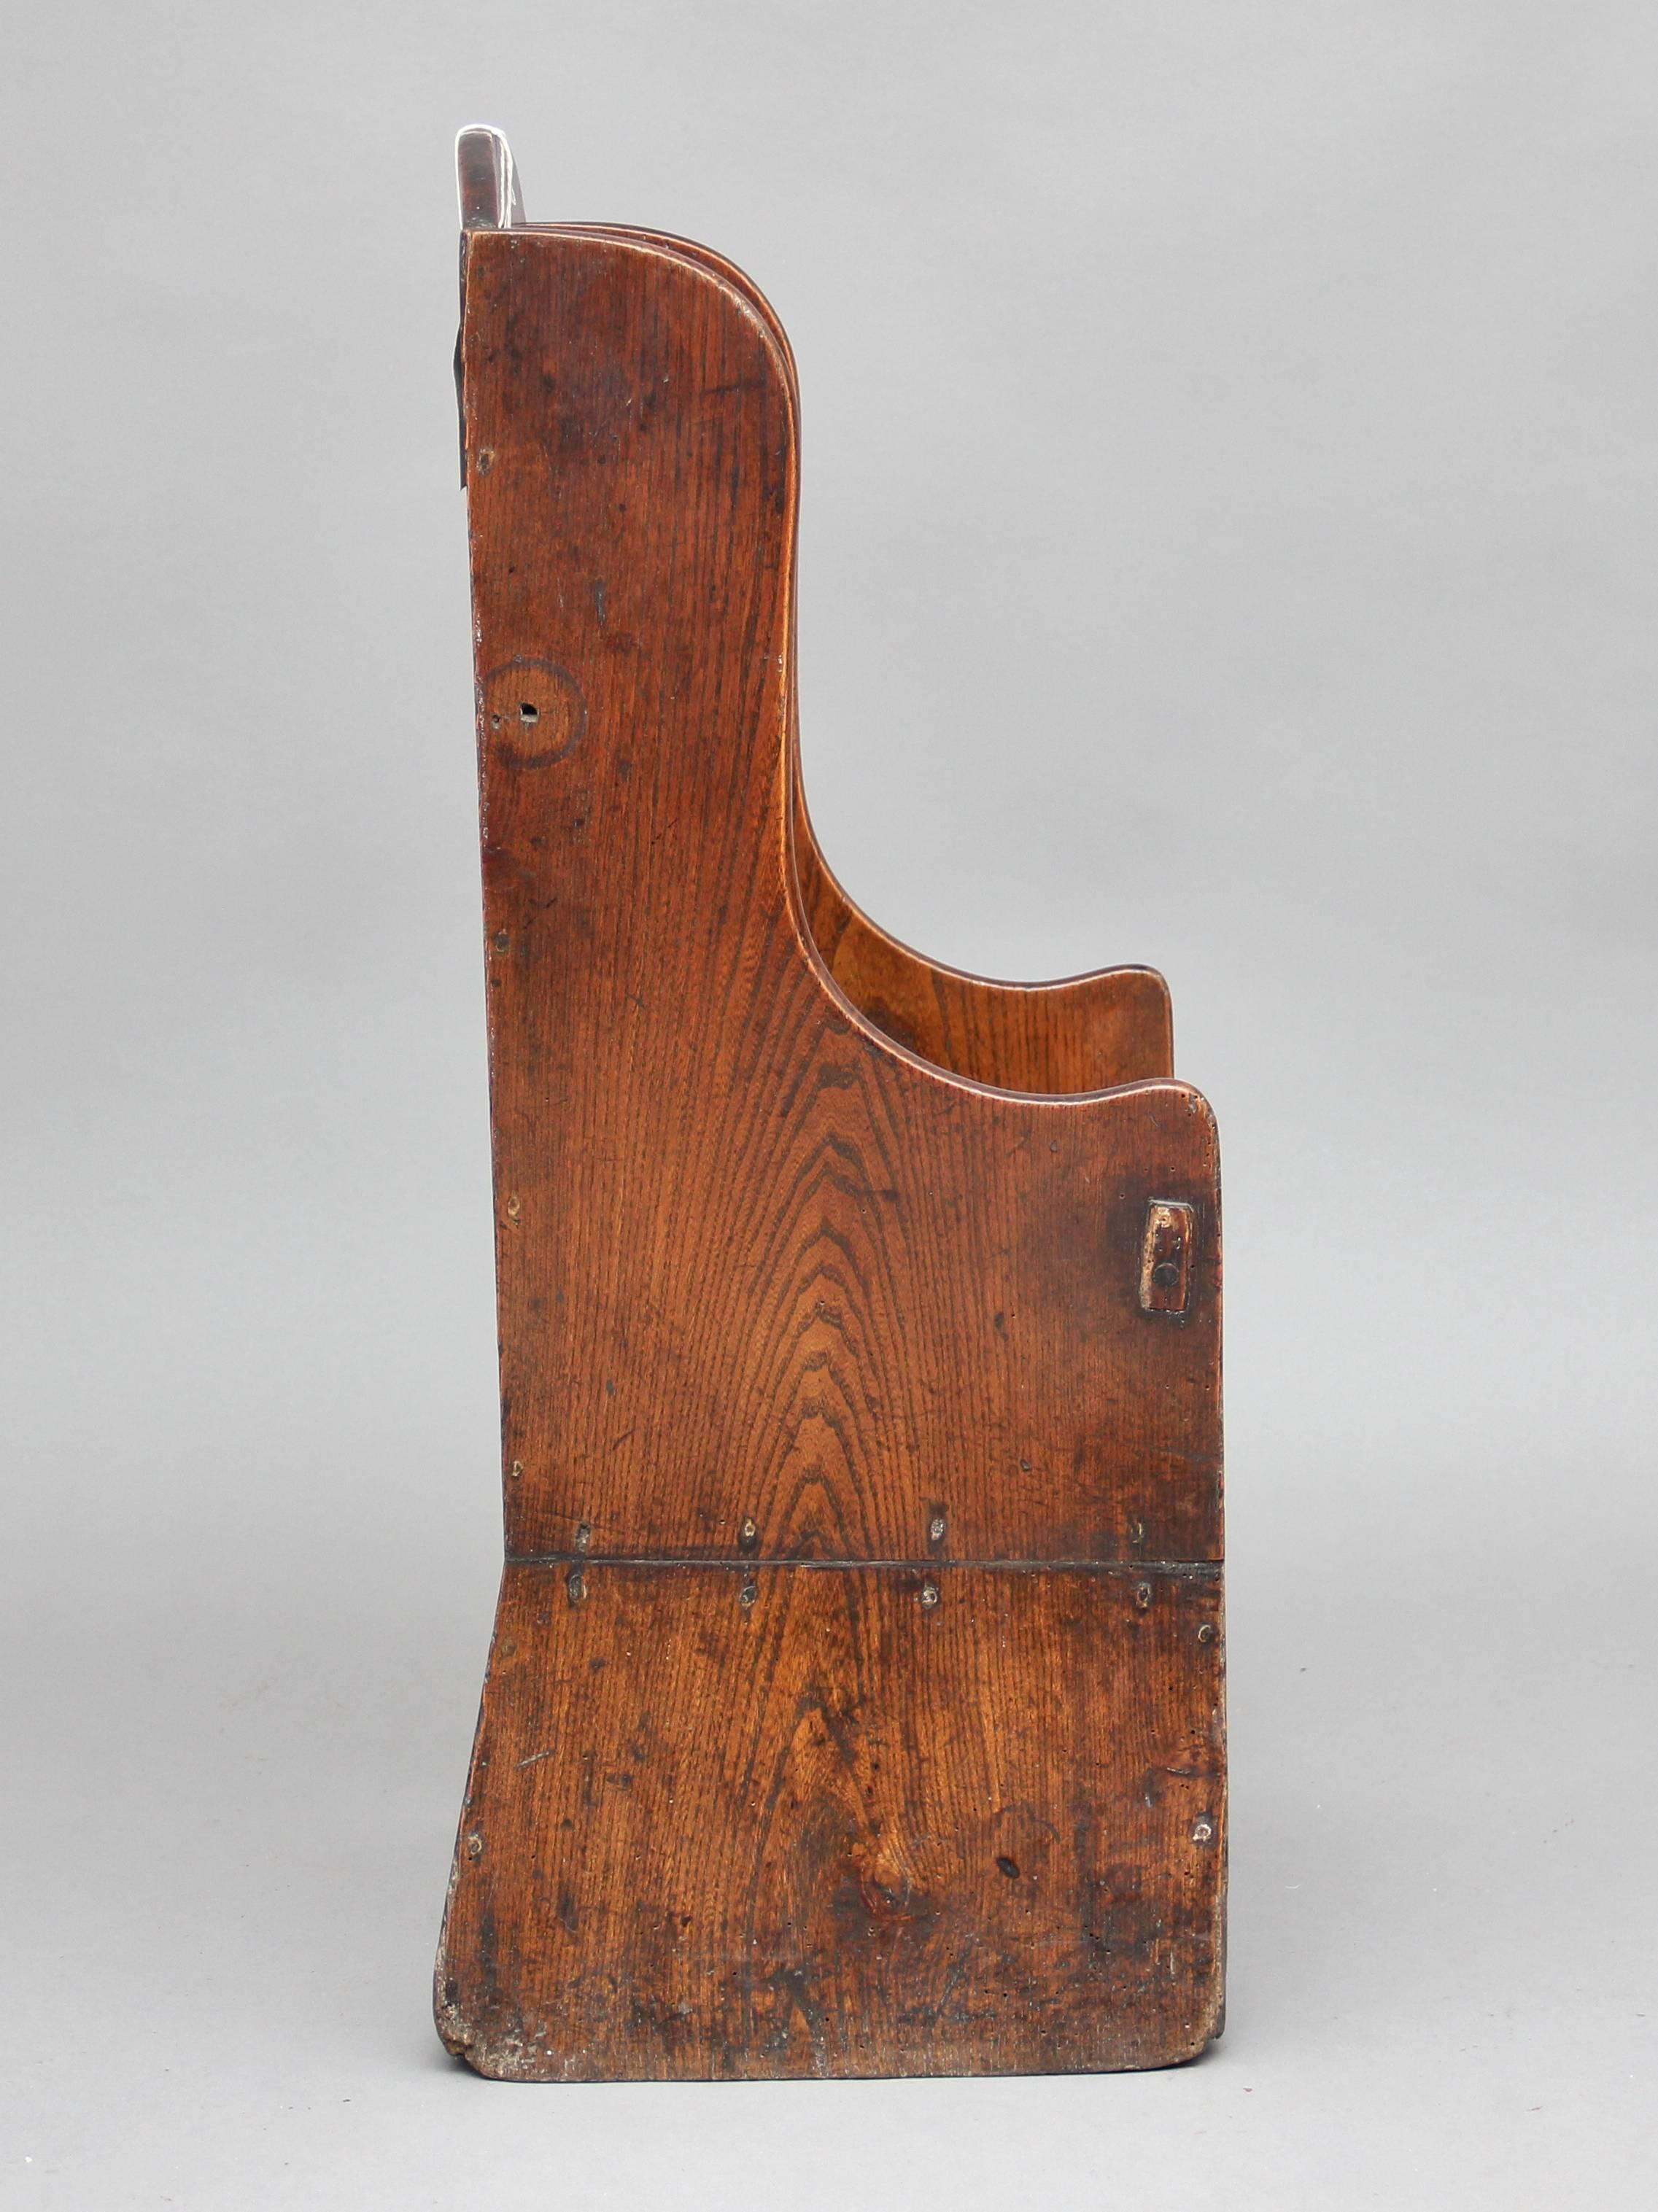 Chaise d'enfant en orme du XVIIIe siècle, avec des côtés façonnés et un dossier arqué avec une prise de main percée, vers 1780.